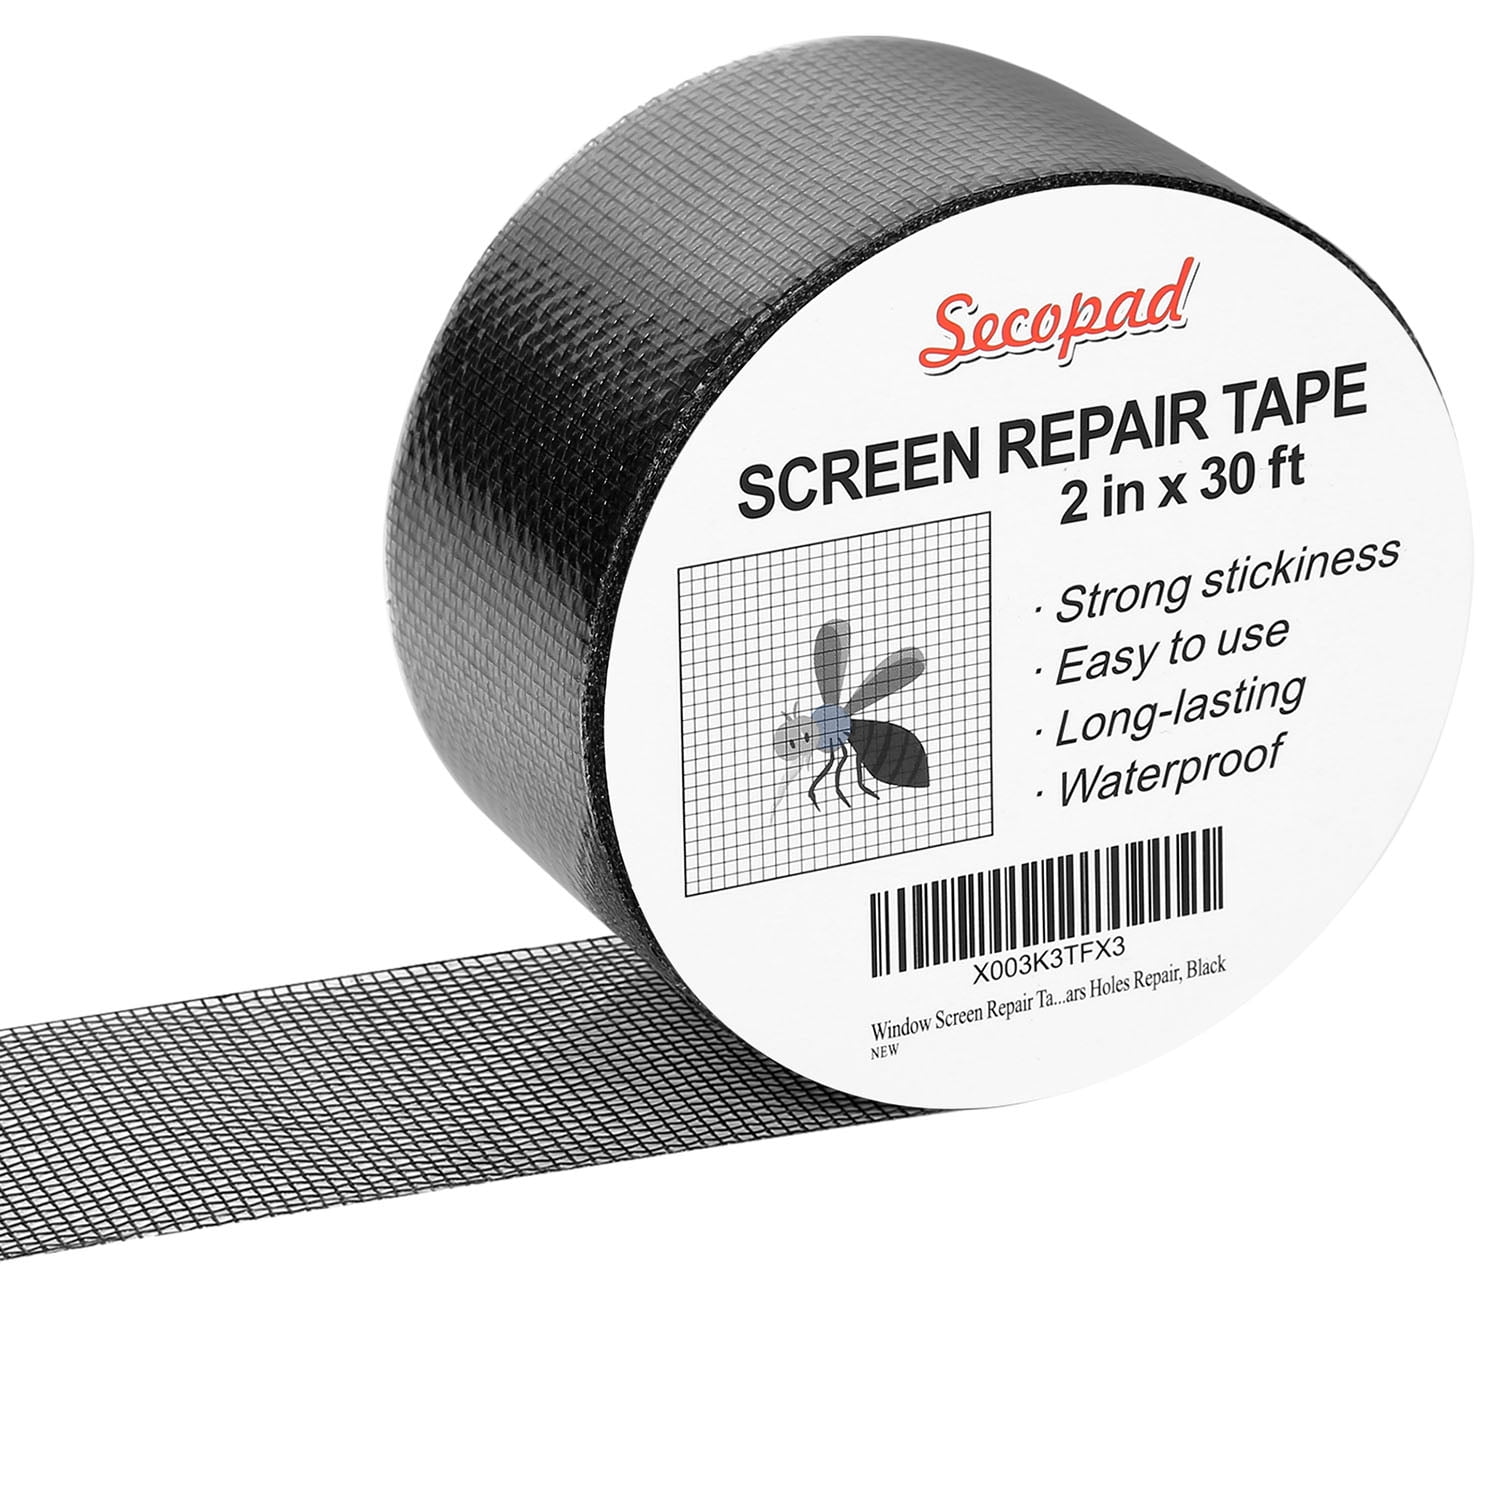 Window Screen Repair Tape, 2 in X 20 FT (240In) Fiberglass Screen Patch  Repair Kit for Window Door Screen, Strong Adhesive Screen Tape Mesh Tears  Holes Repair, Black 